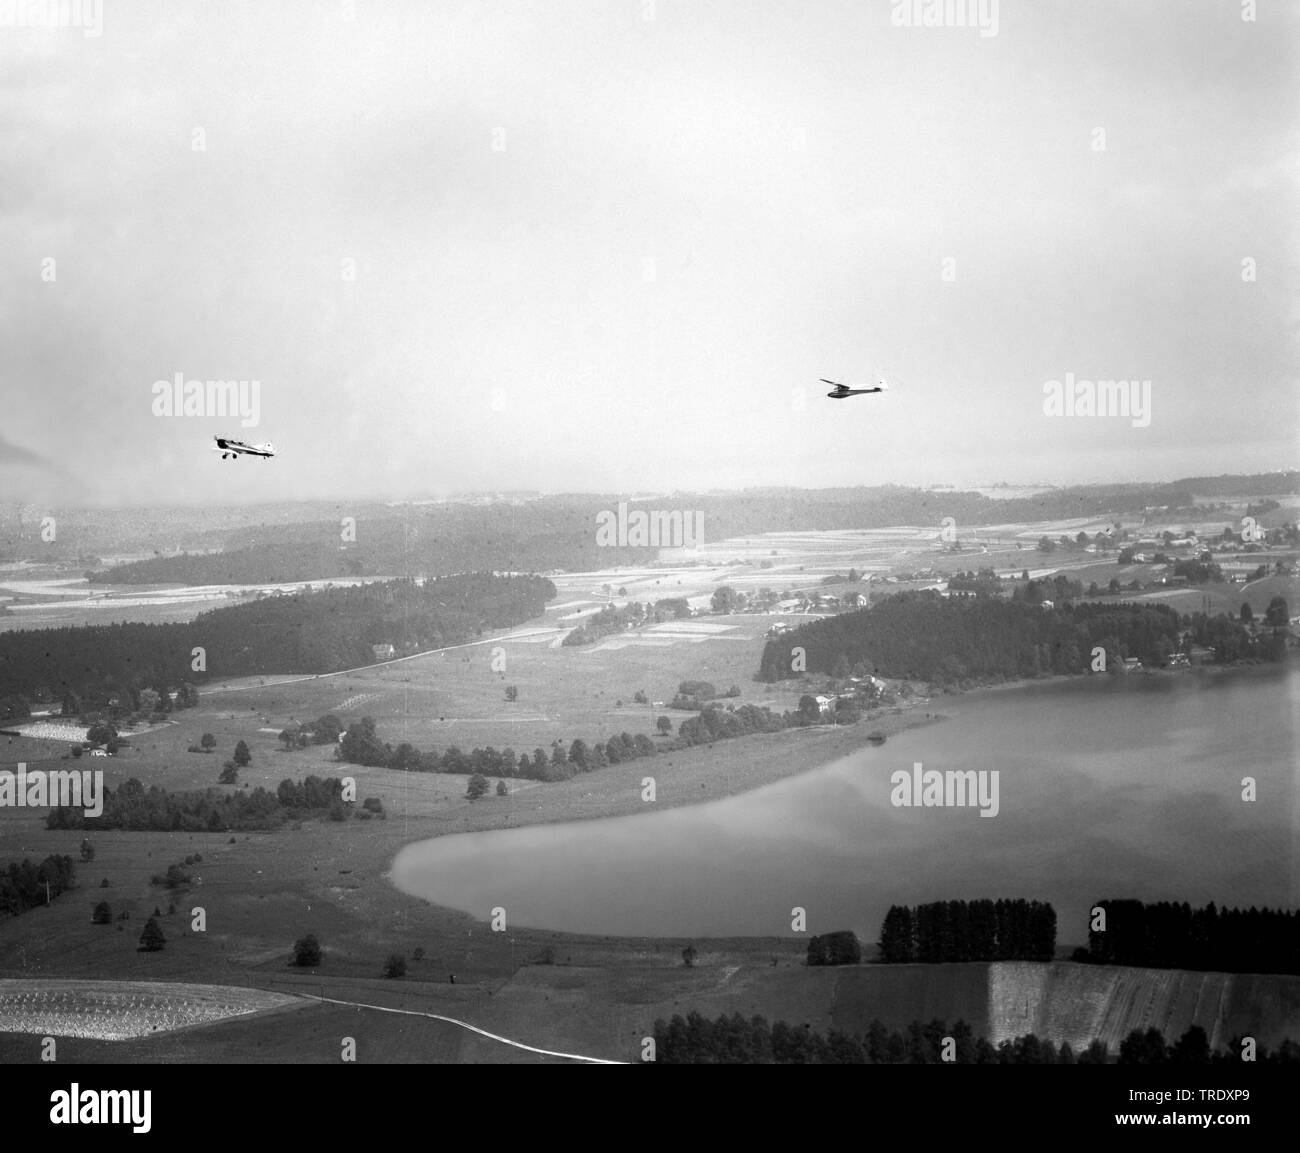 Towplane und Schirm über Ottendorf, Luftbild aus dem Jahr 1961, Deutschland, Bayern Stockfoto